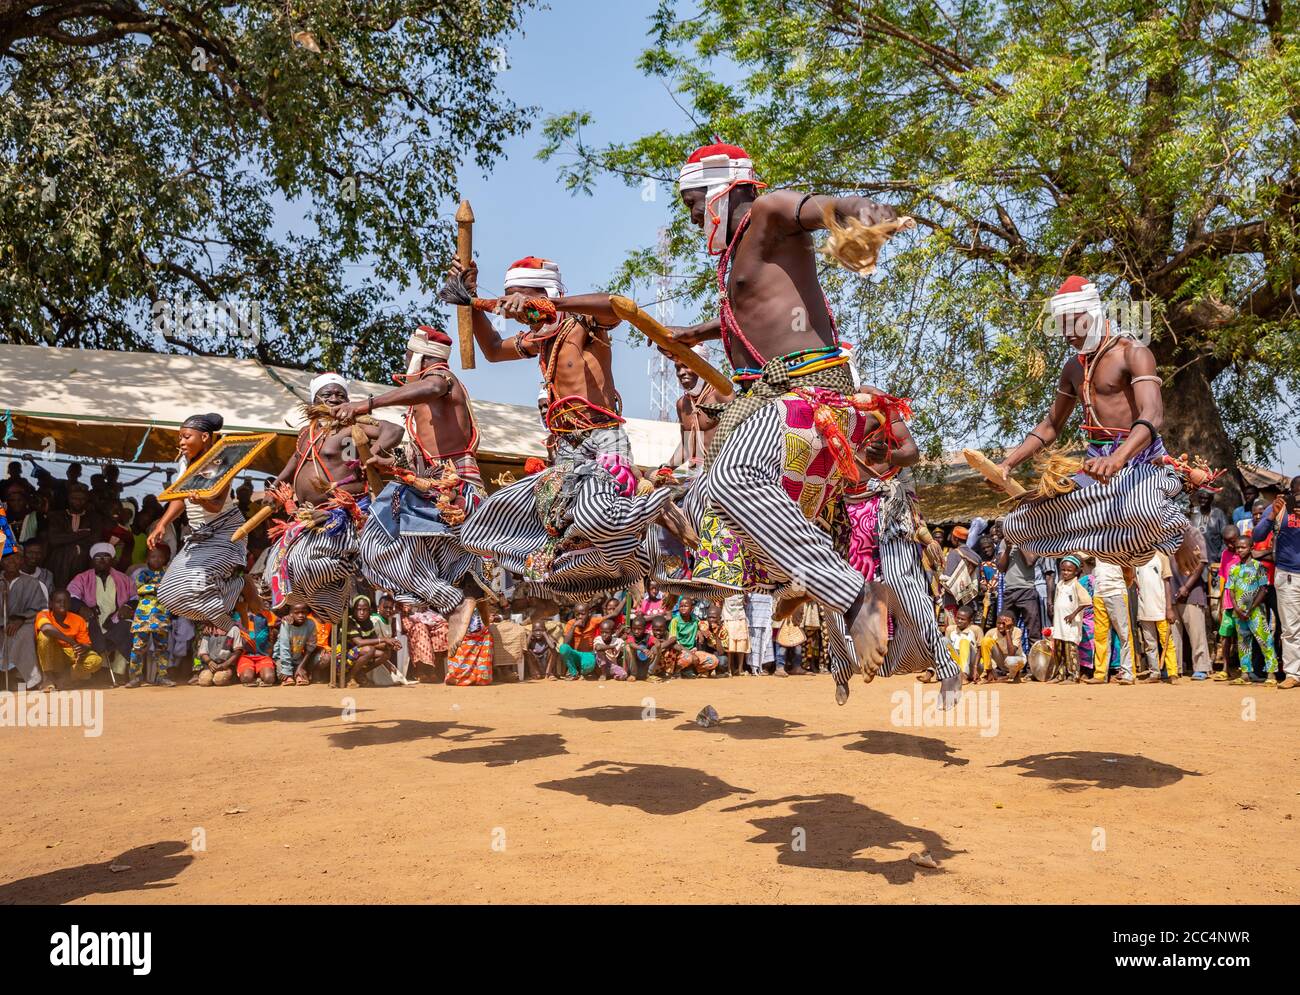 Danza tradicional de la gente de Bariba en el festival de Gaani Foto de stock